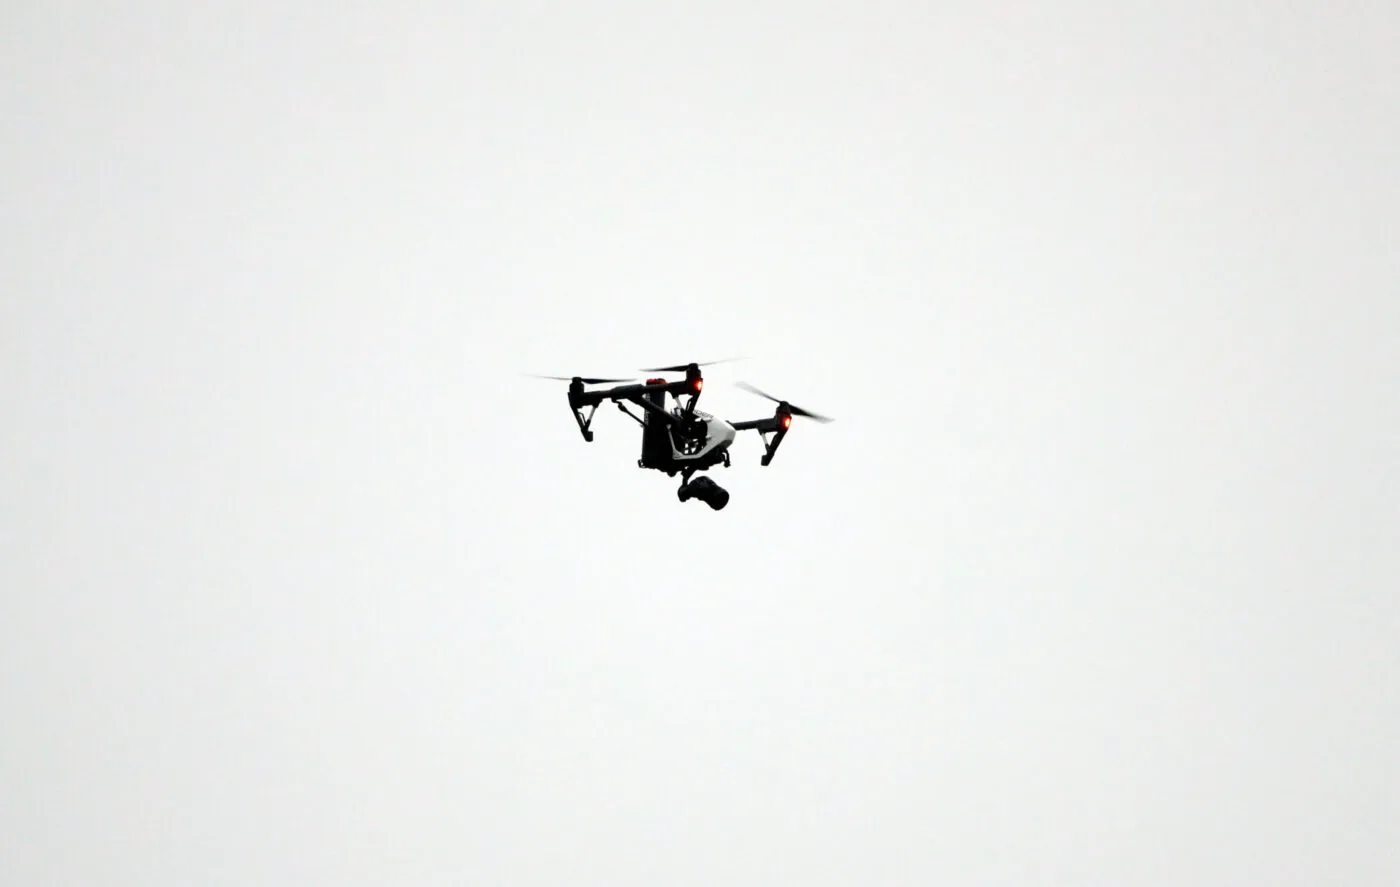 Le Canada accusé d’espionnage au drone par la Nouvelle-Zélande aux JO